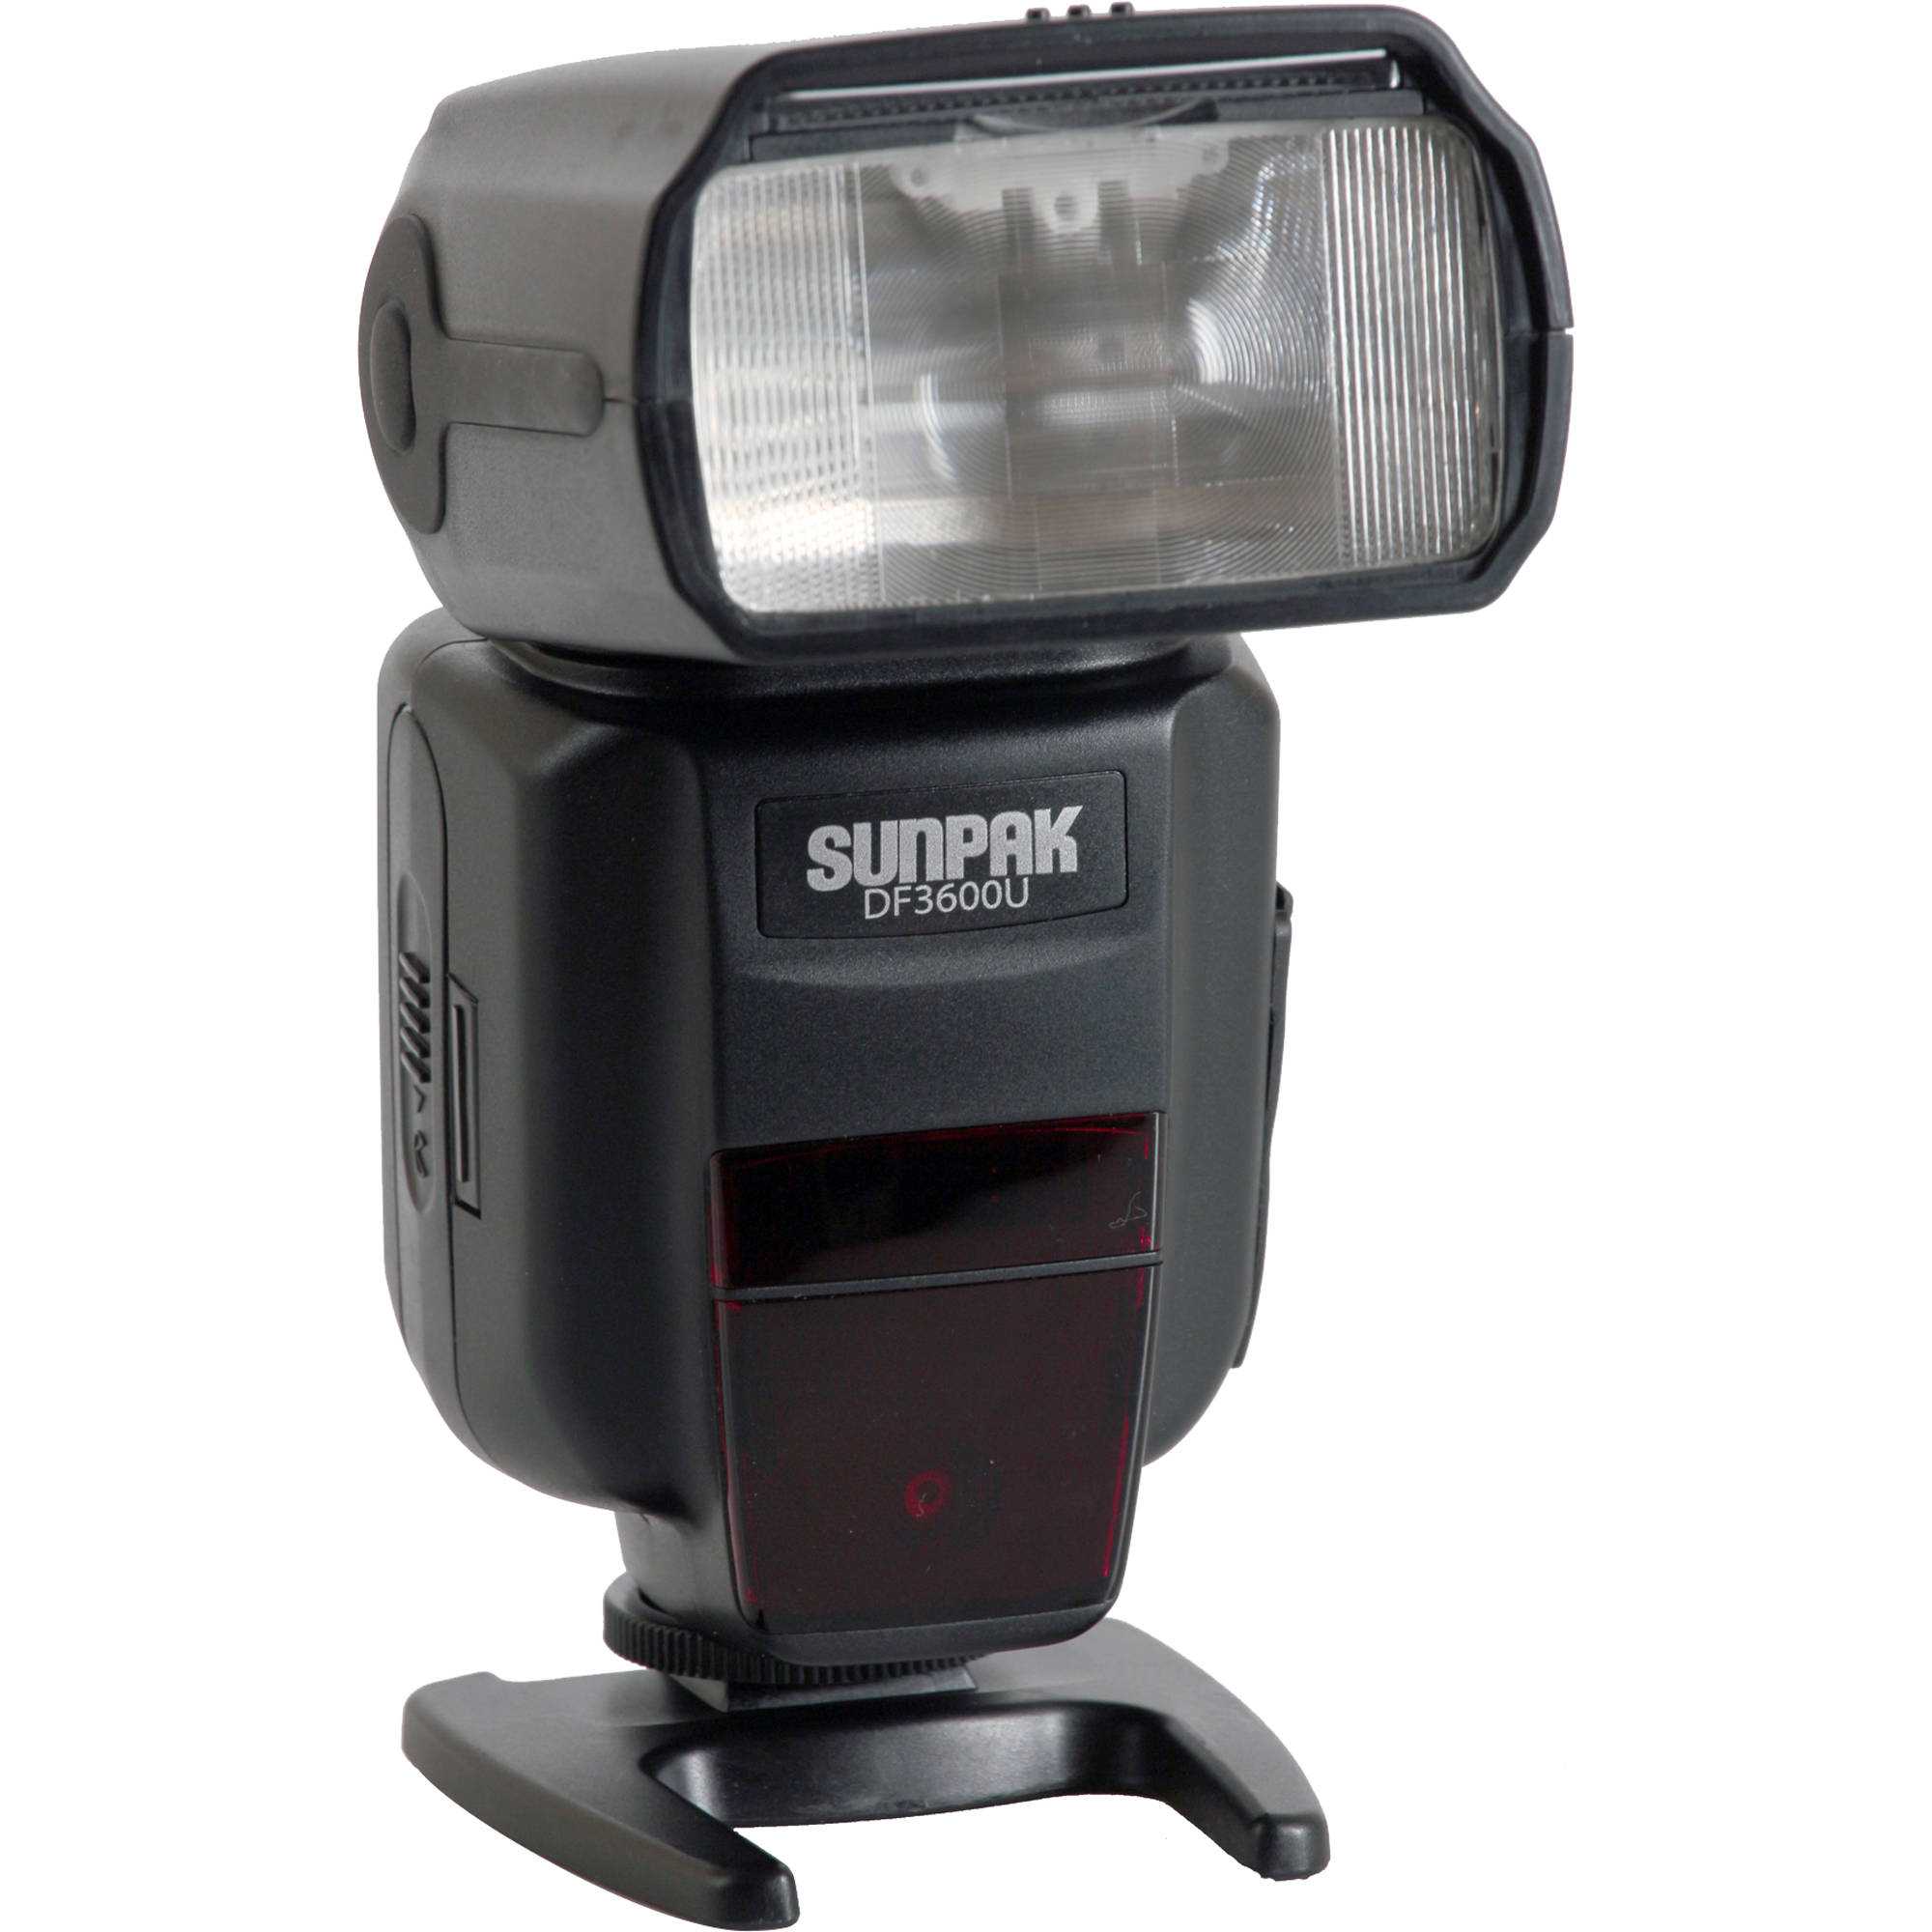 Sunpak pz42x digital flash for nikon купить по акционной цене , отзывы и обзоры.